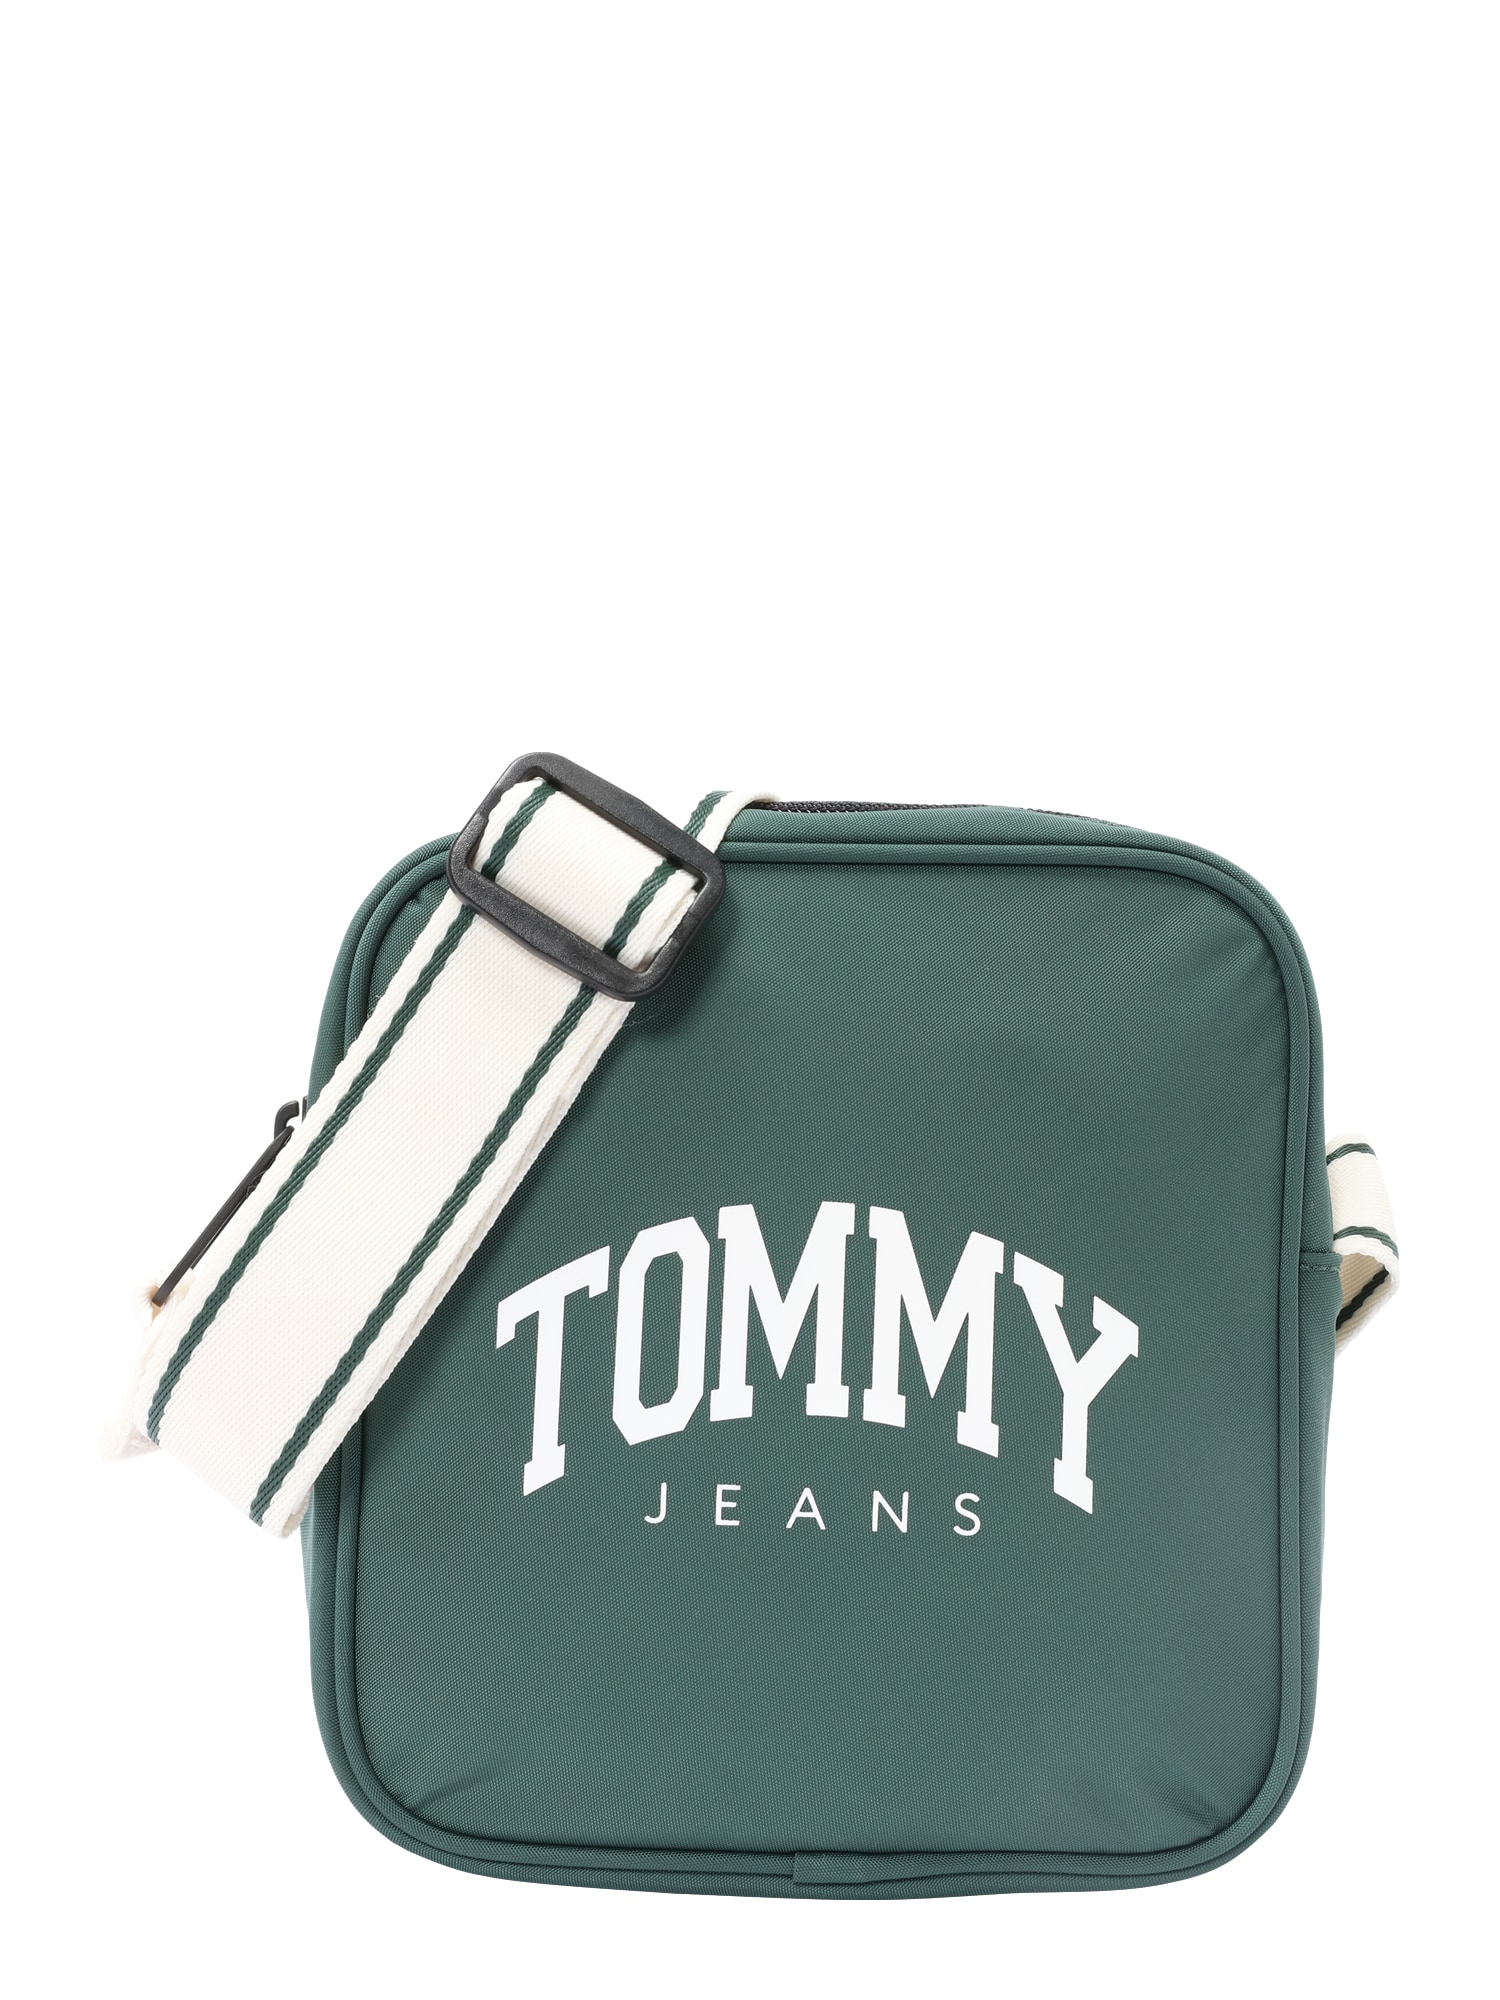 Tommy Jeans Rankinė su ilgu dirželiu smaragdinė spalva / juoda / balta